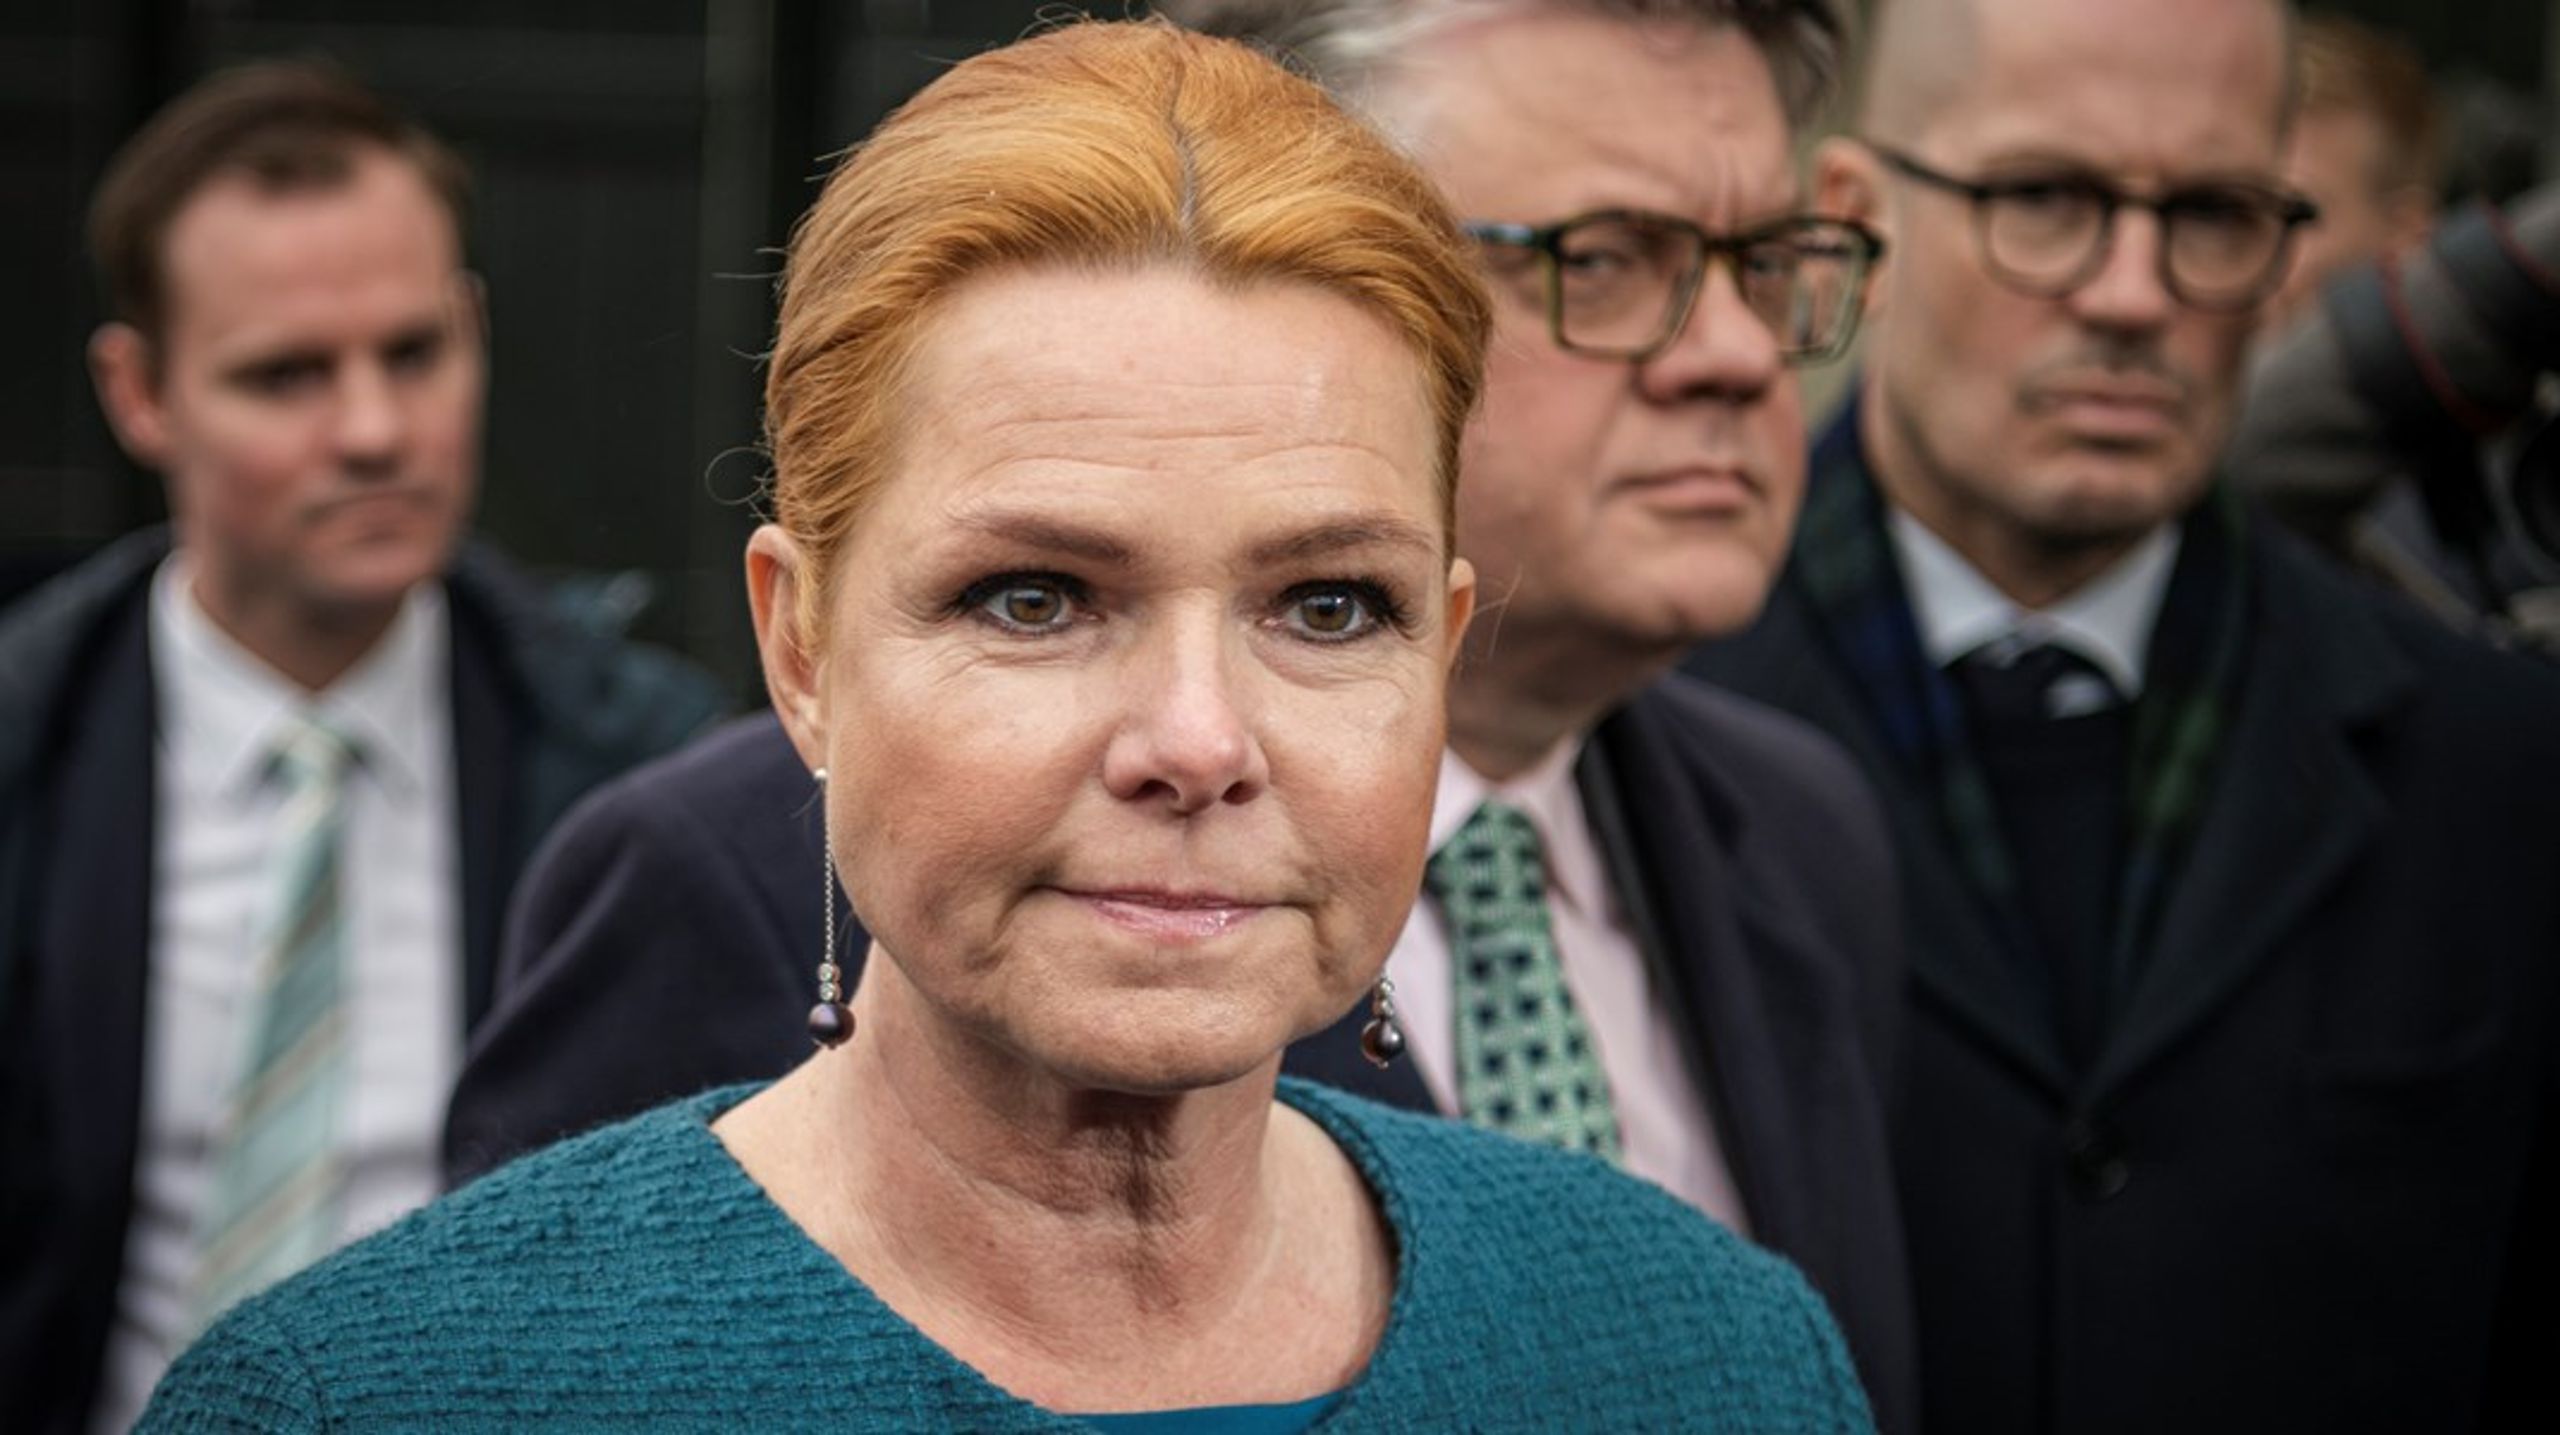 Det var en förvånad Inger Stöjberg som mötte pressen efter att domen mot henne lästs upp i Riksrätten.